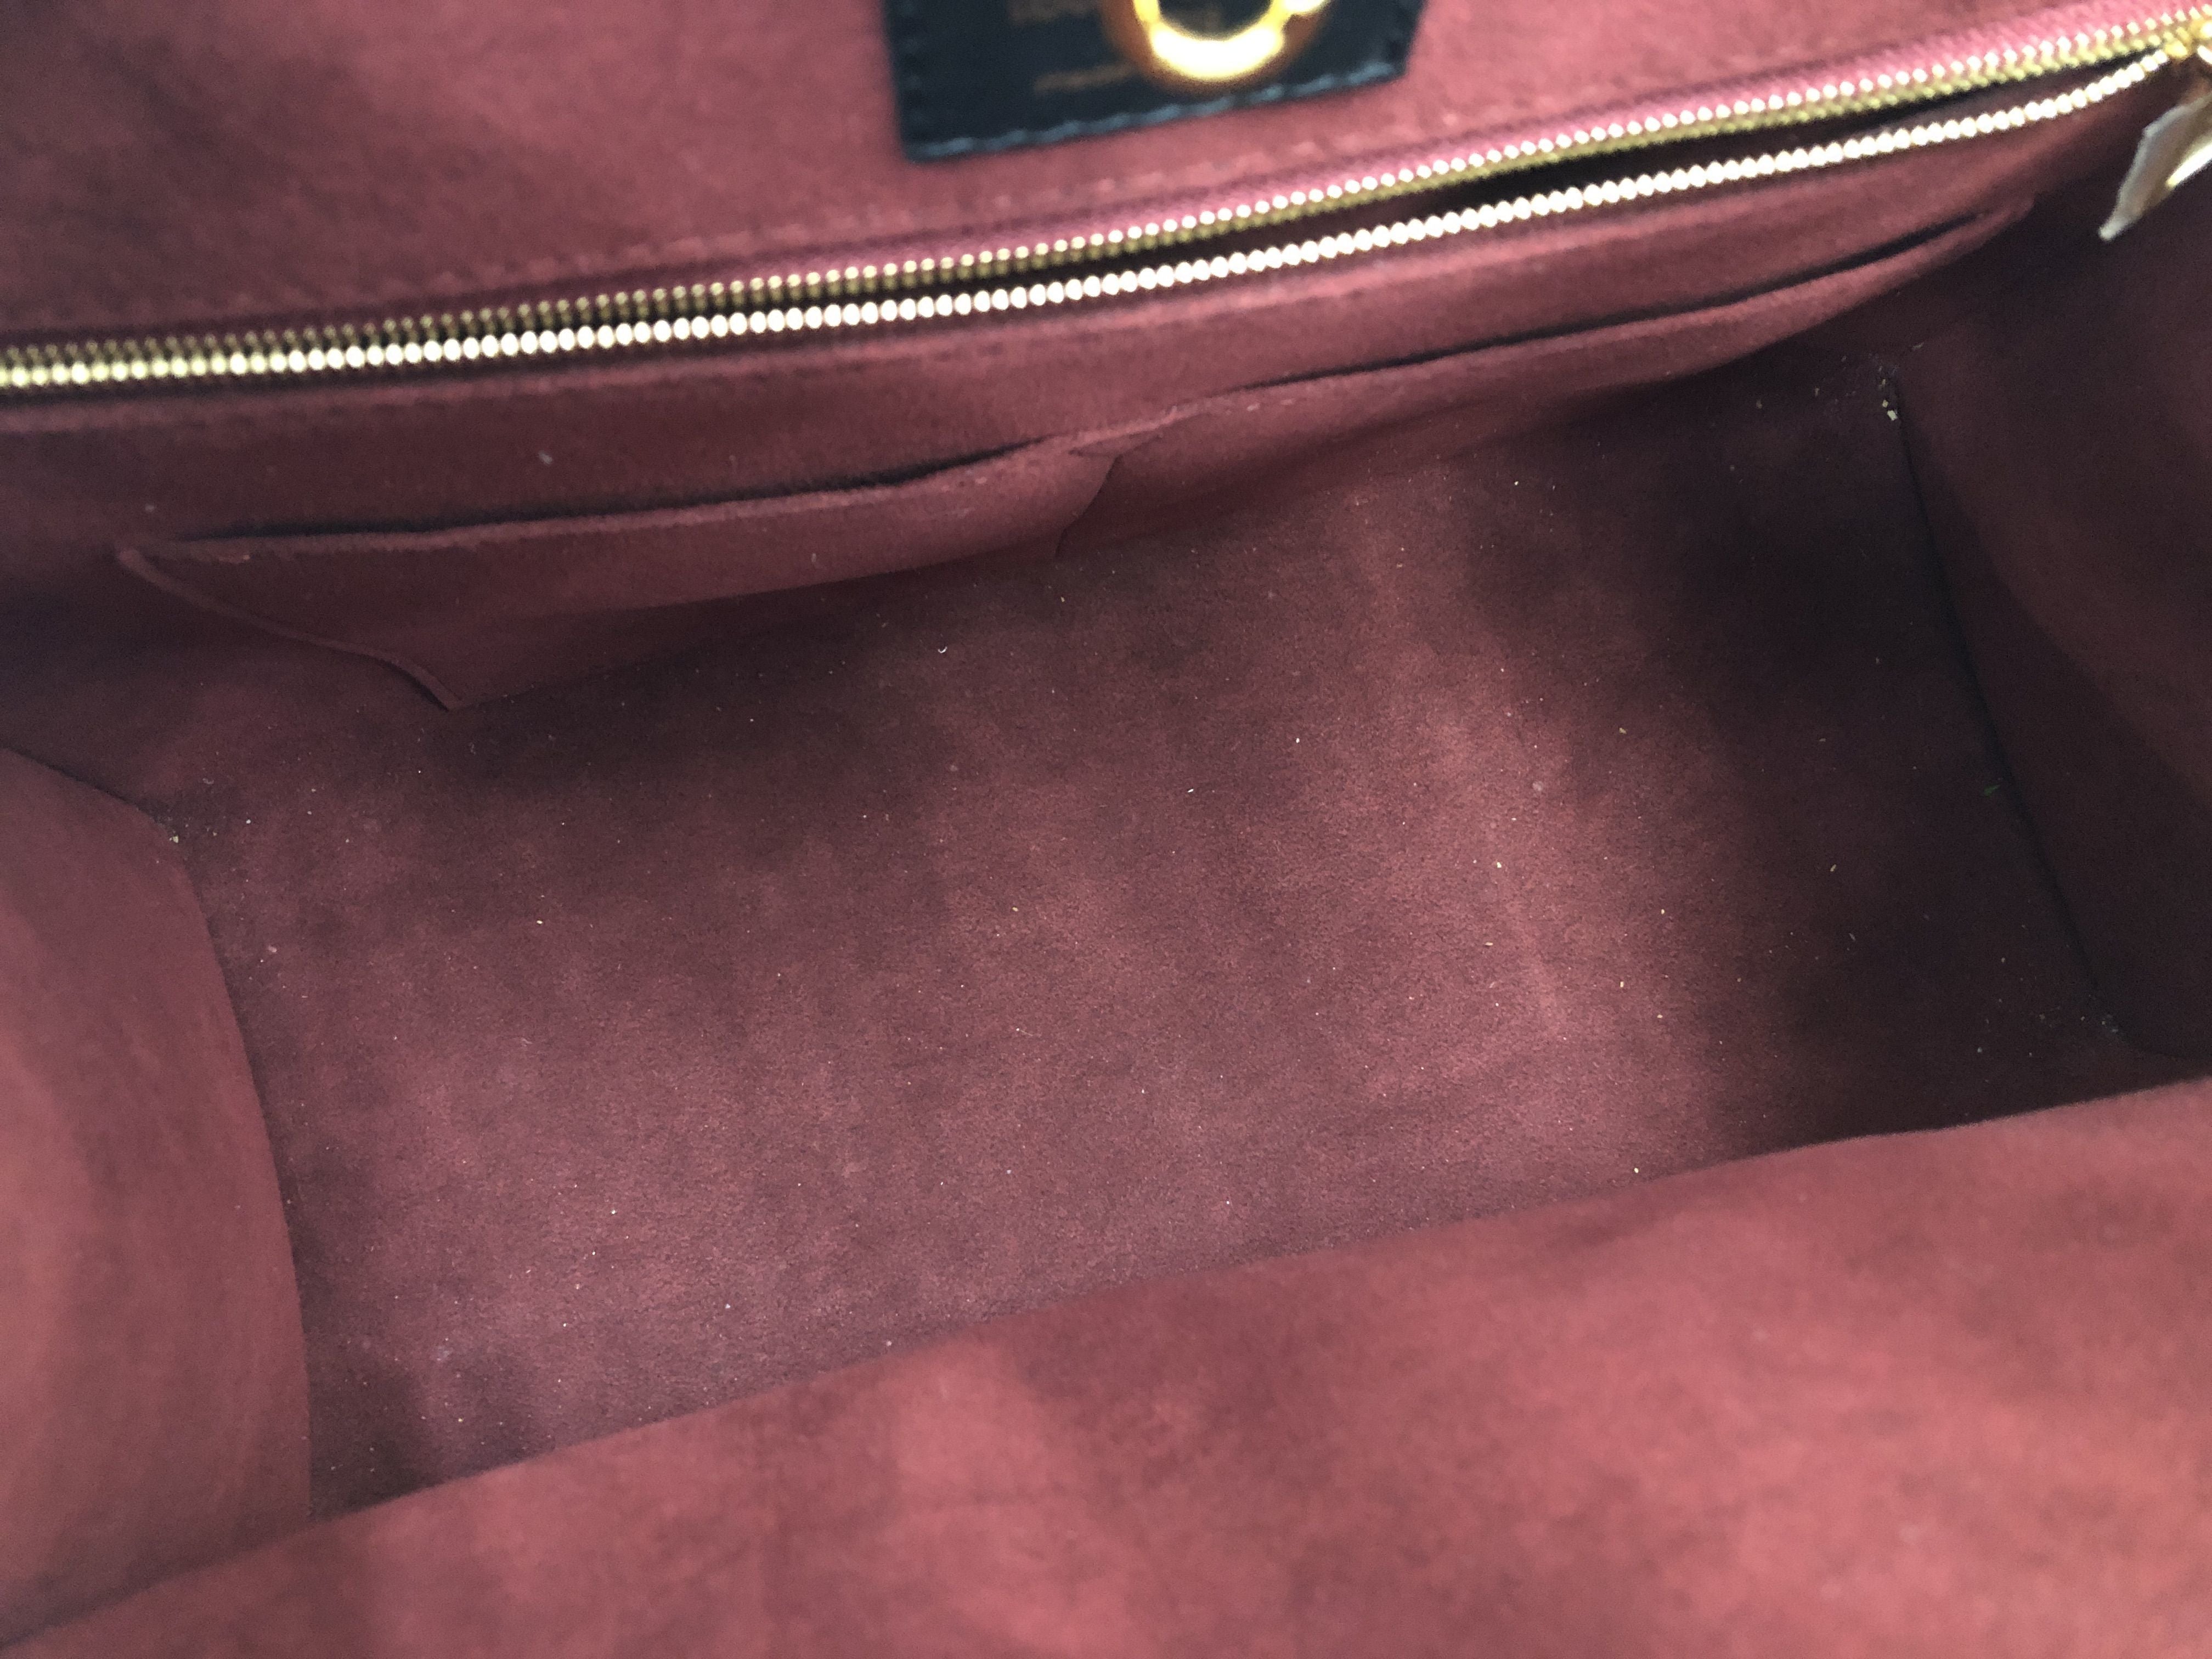 Louis Vuitton M45653 On-The-Go Pm Handbag Tote Bag Amplant Noir